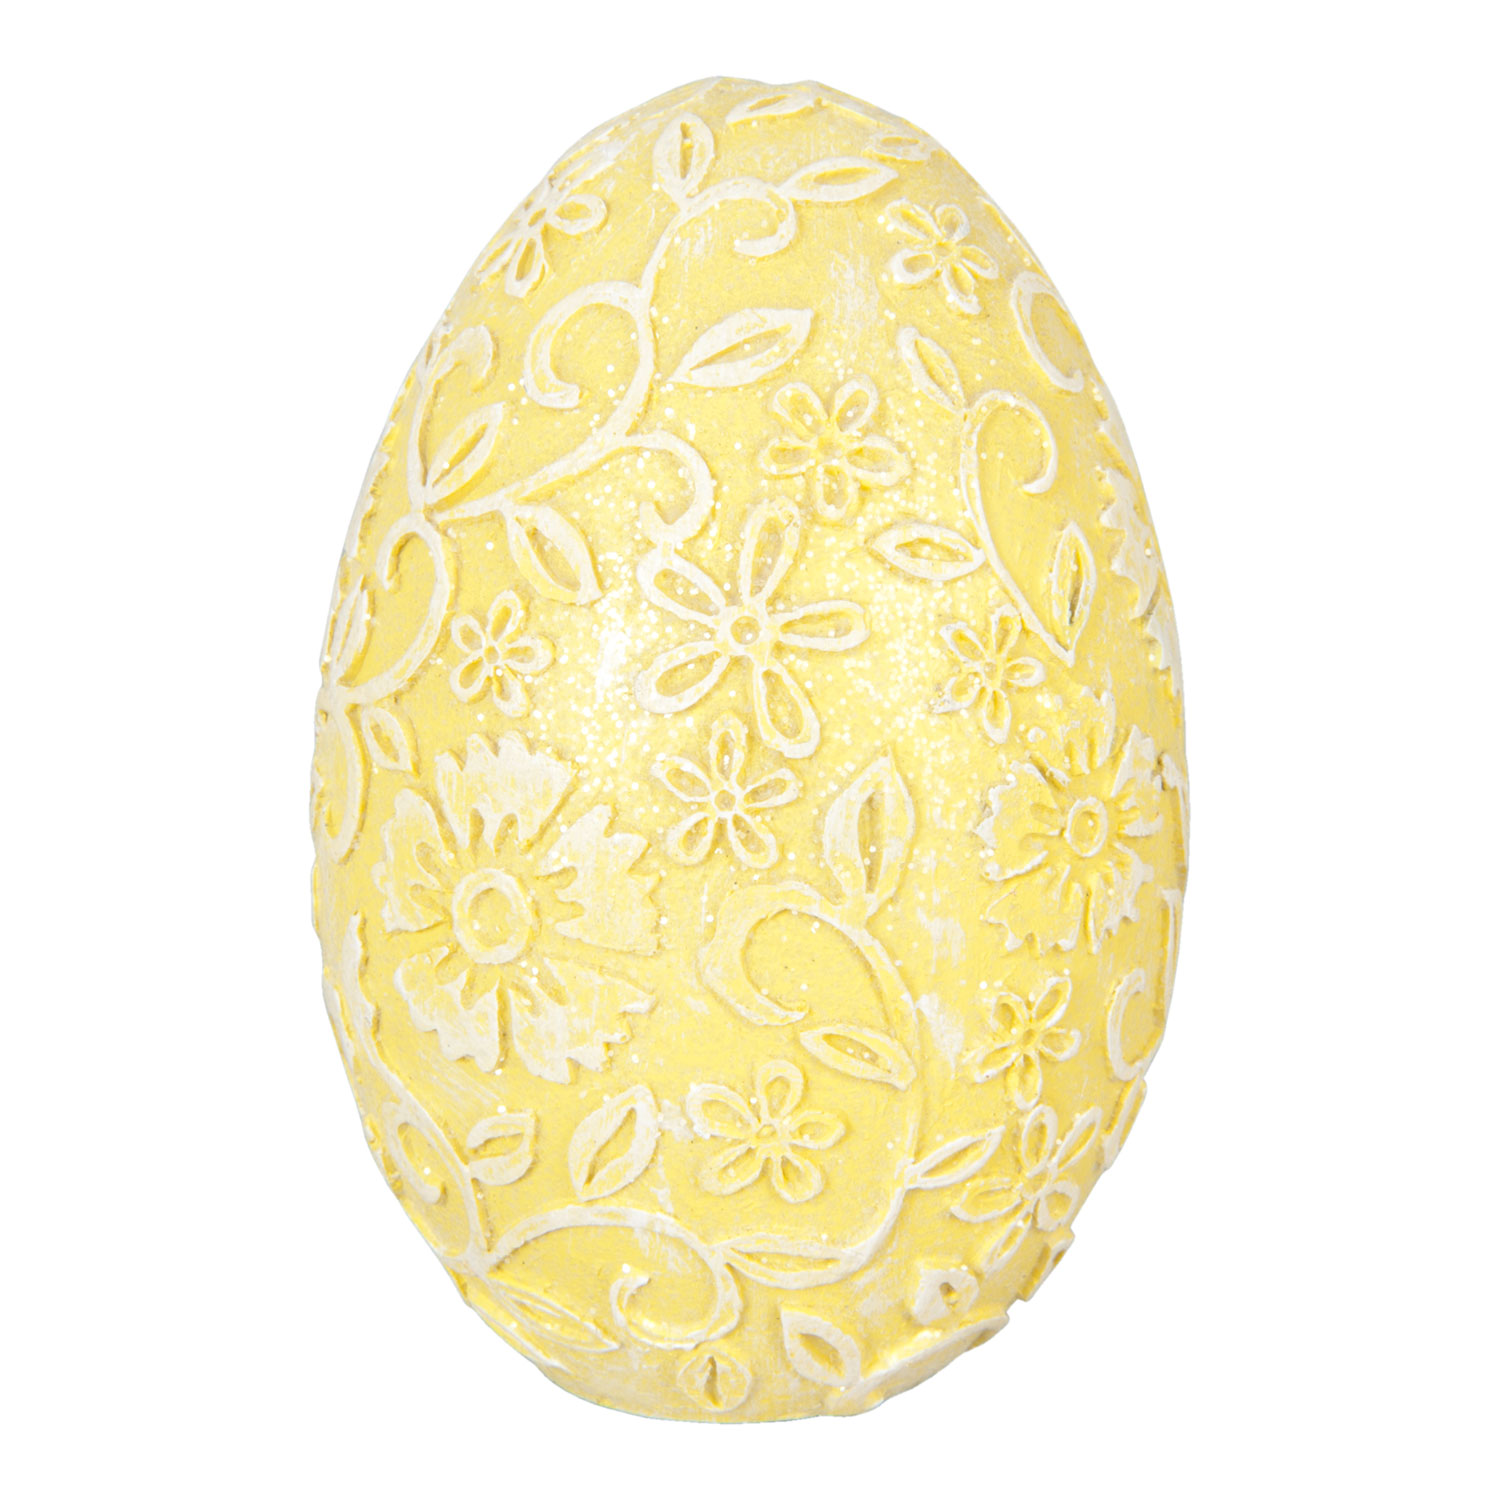 Vajíčko